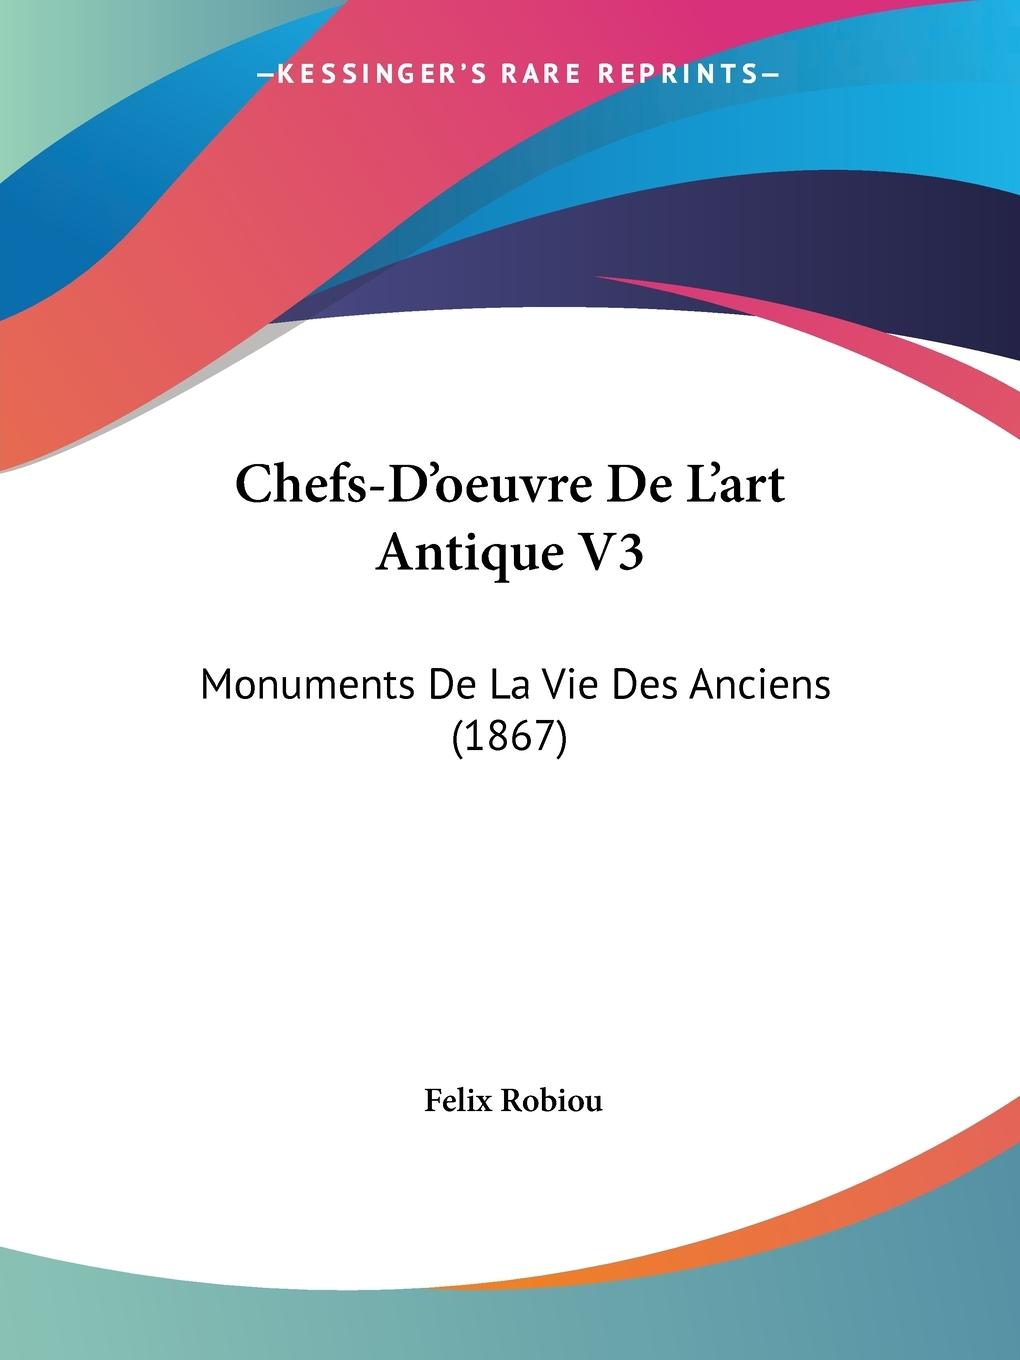 Chefs-D oeuvre De L art Antique V3 - Robiou, Felix